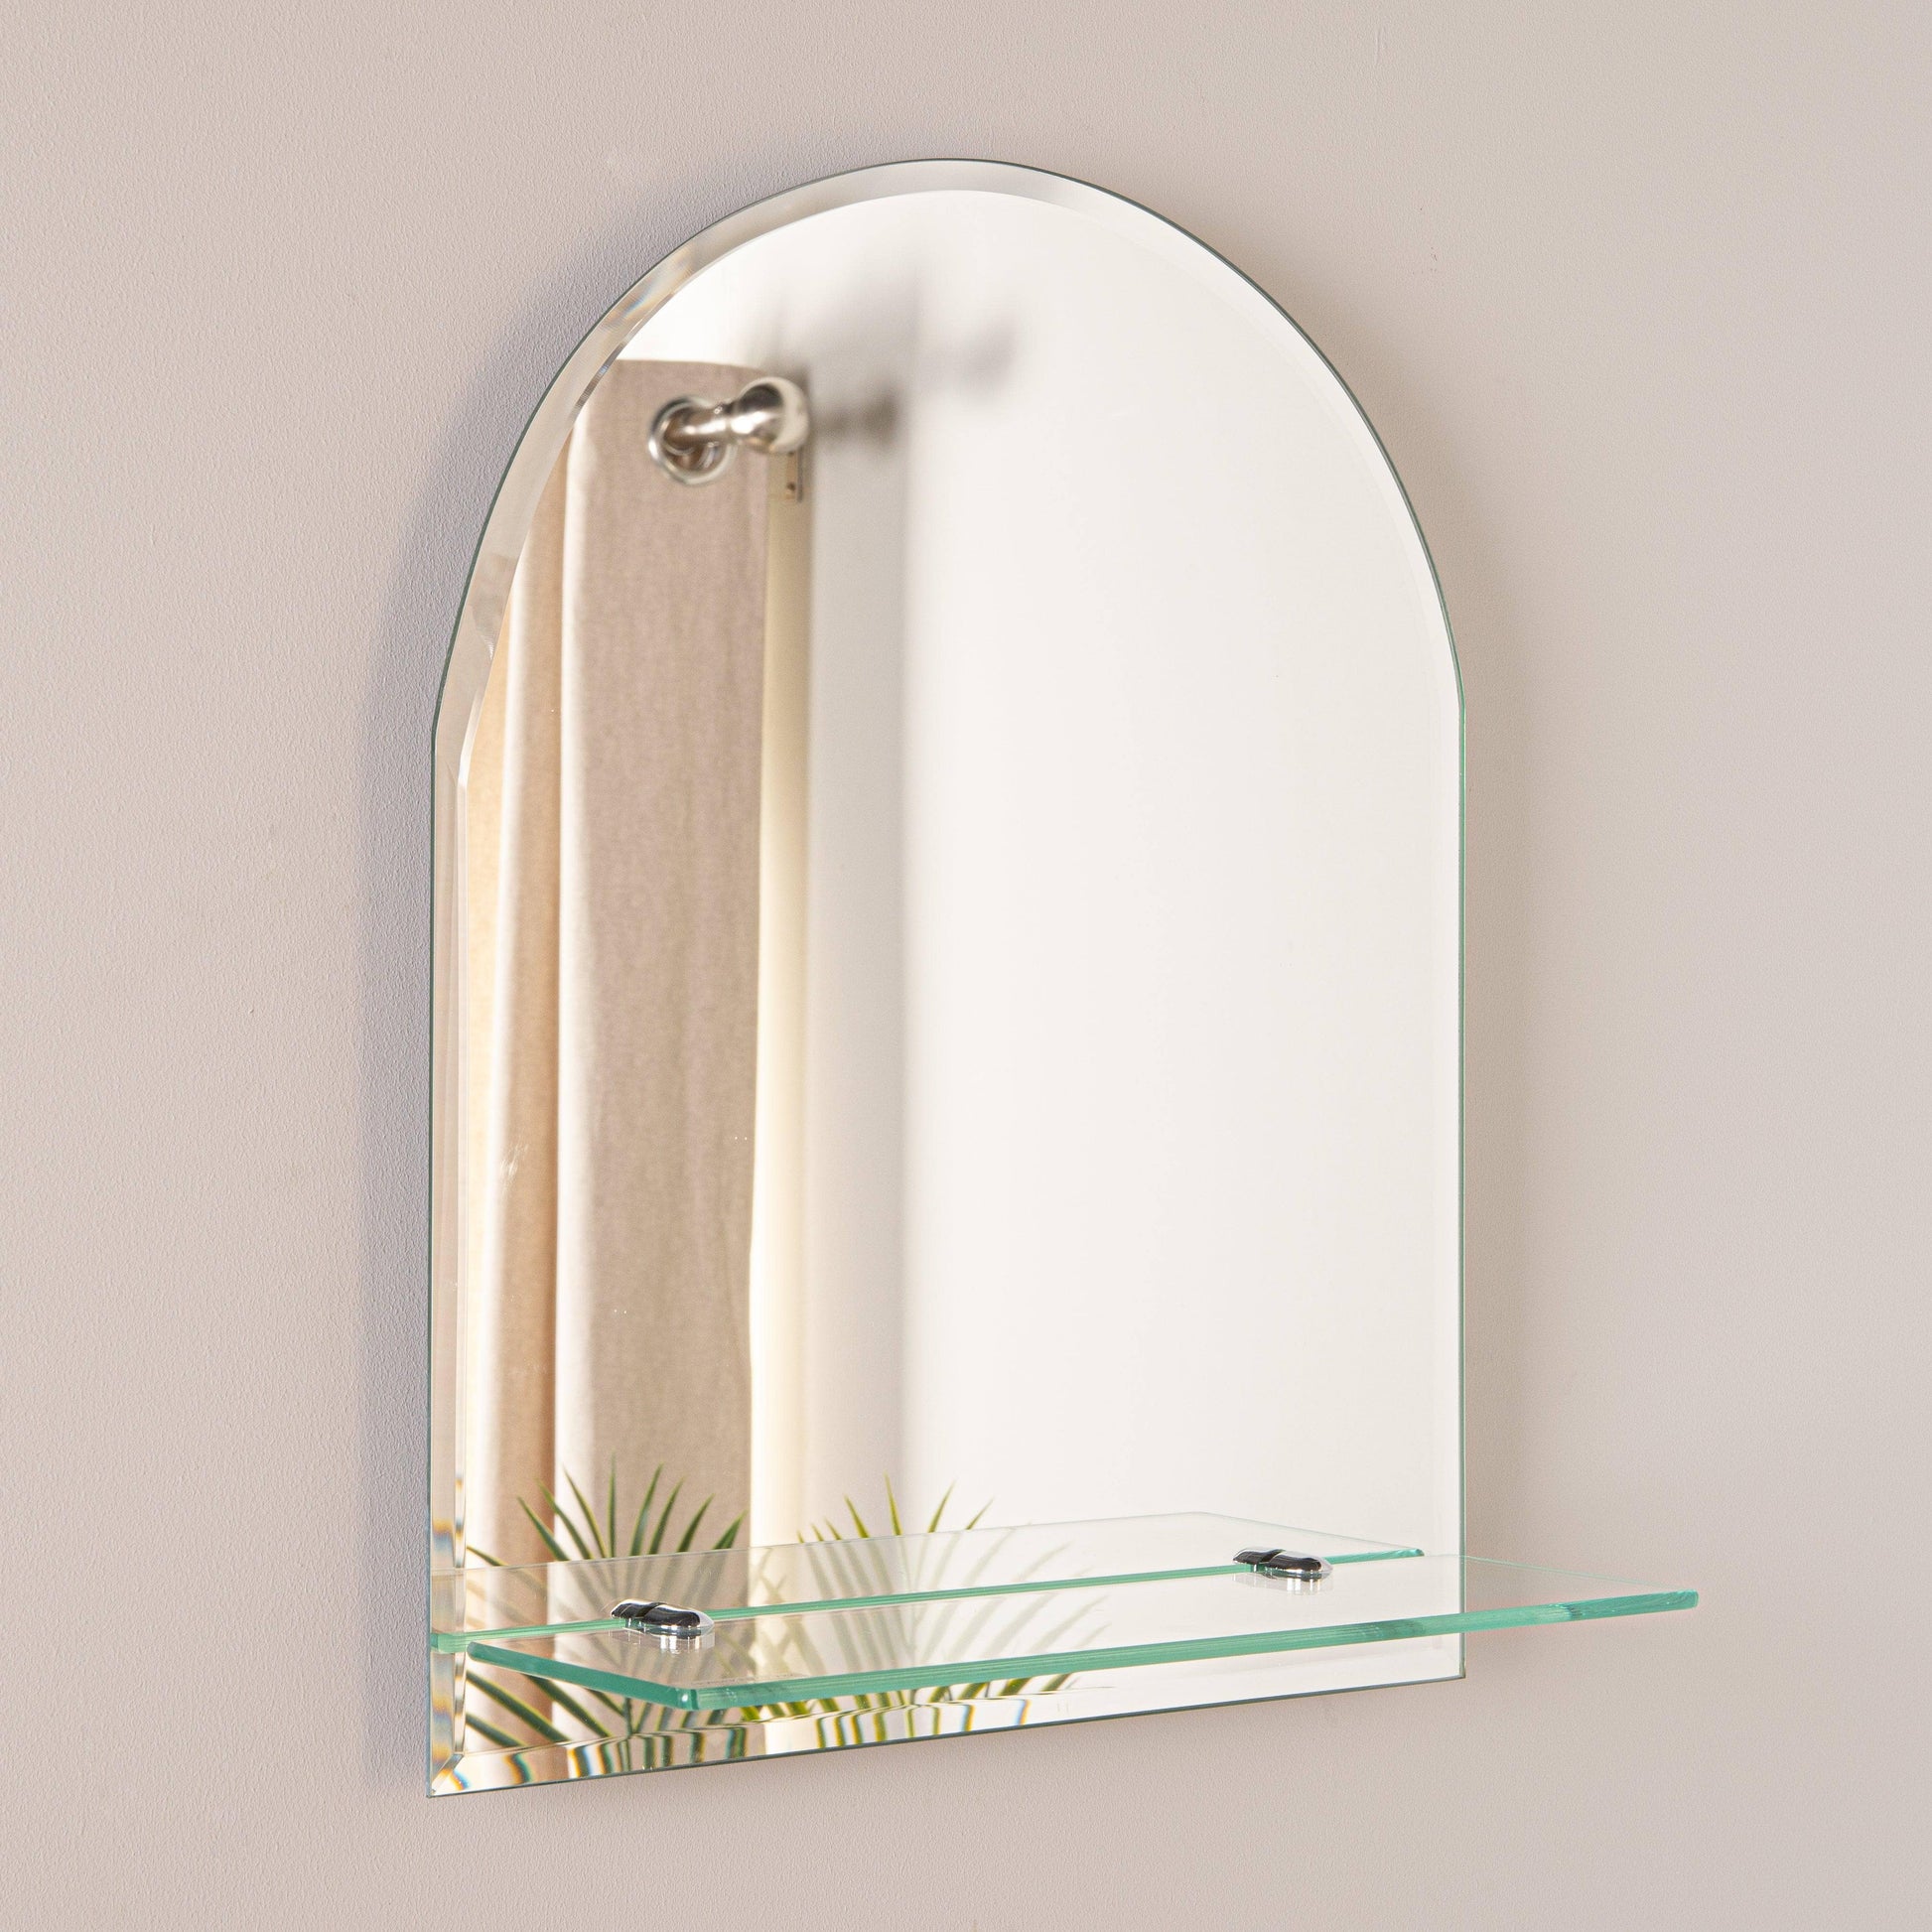 Mirrors  -  Euro Mirror/Shelf Round Top 50X40  -  50155663